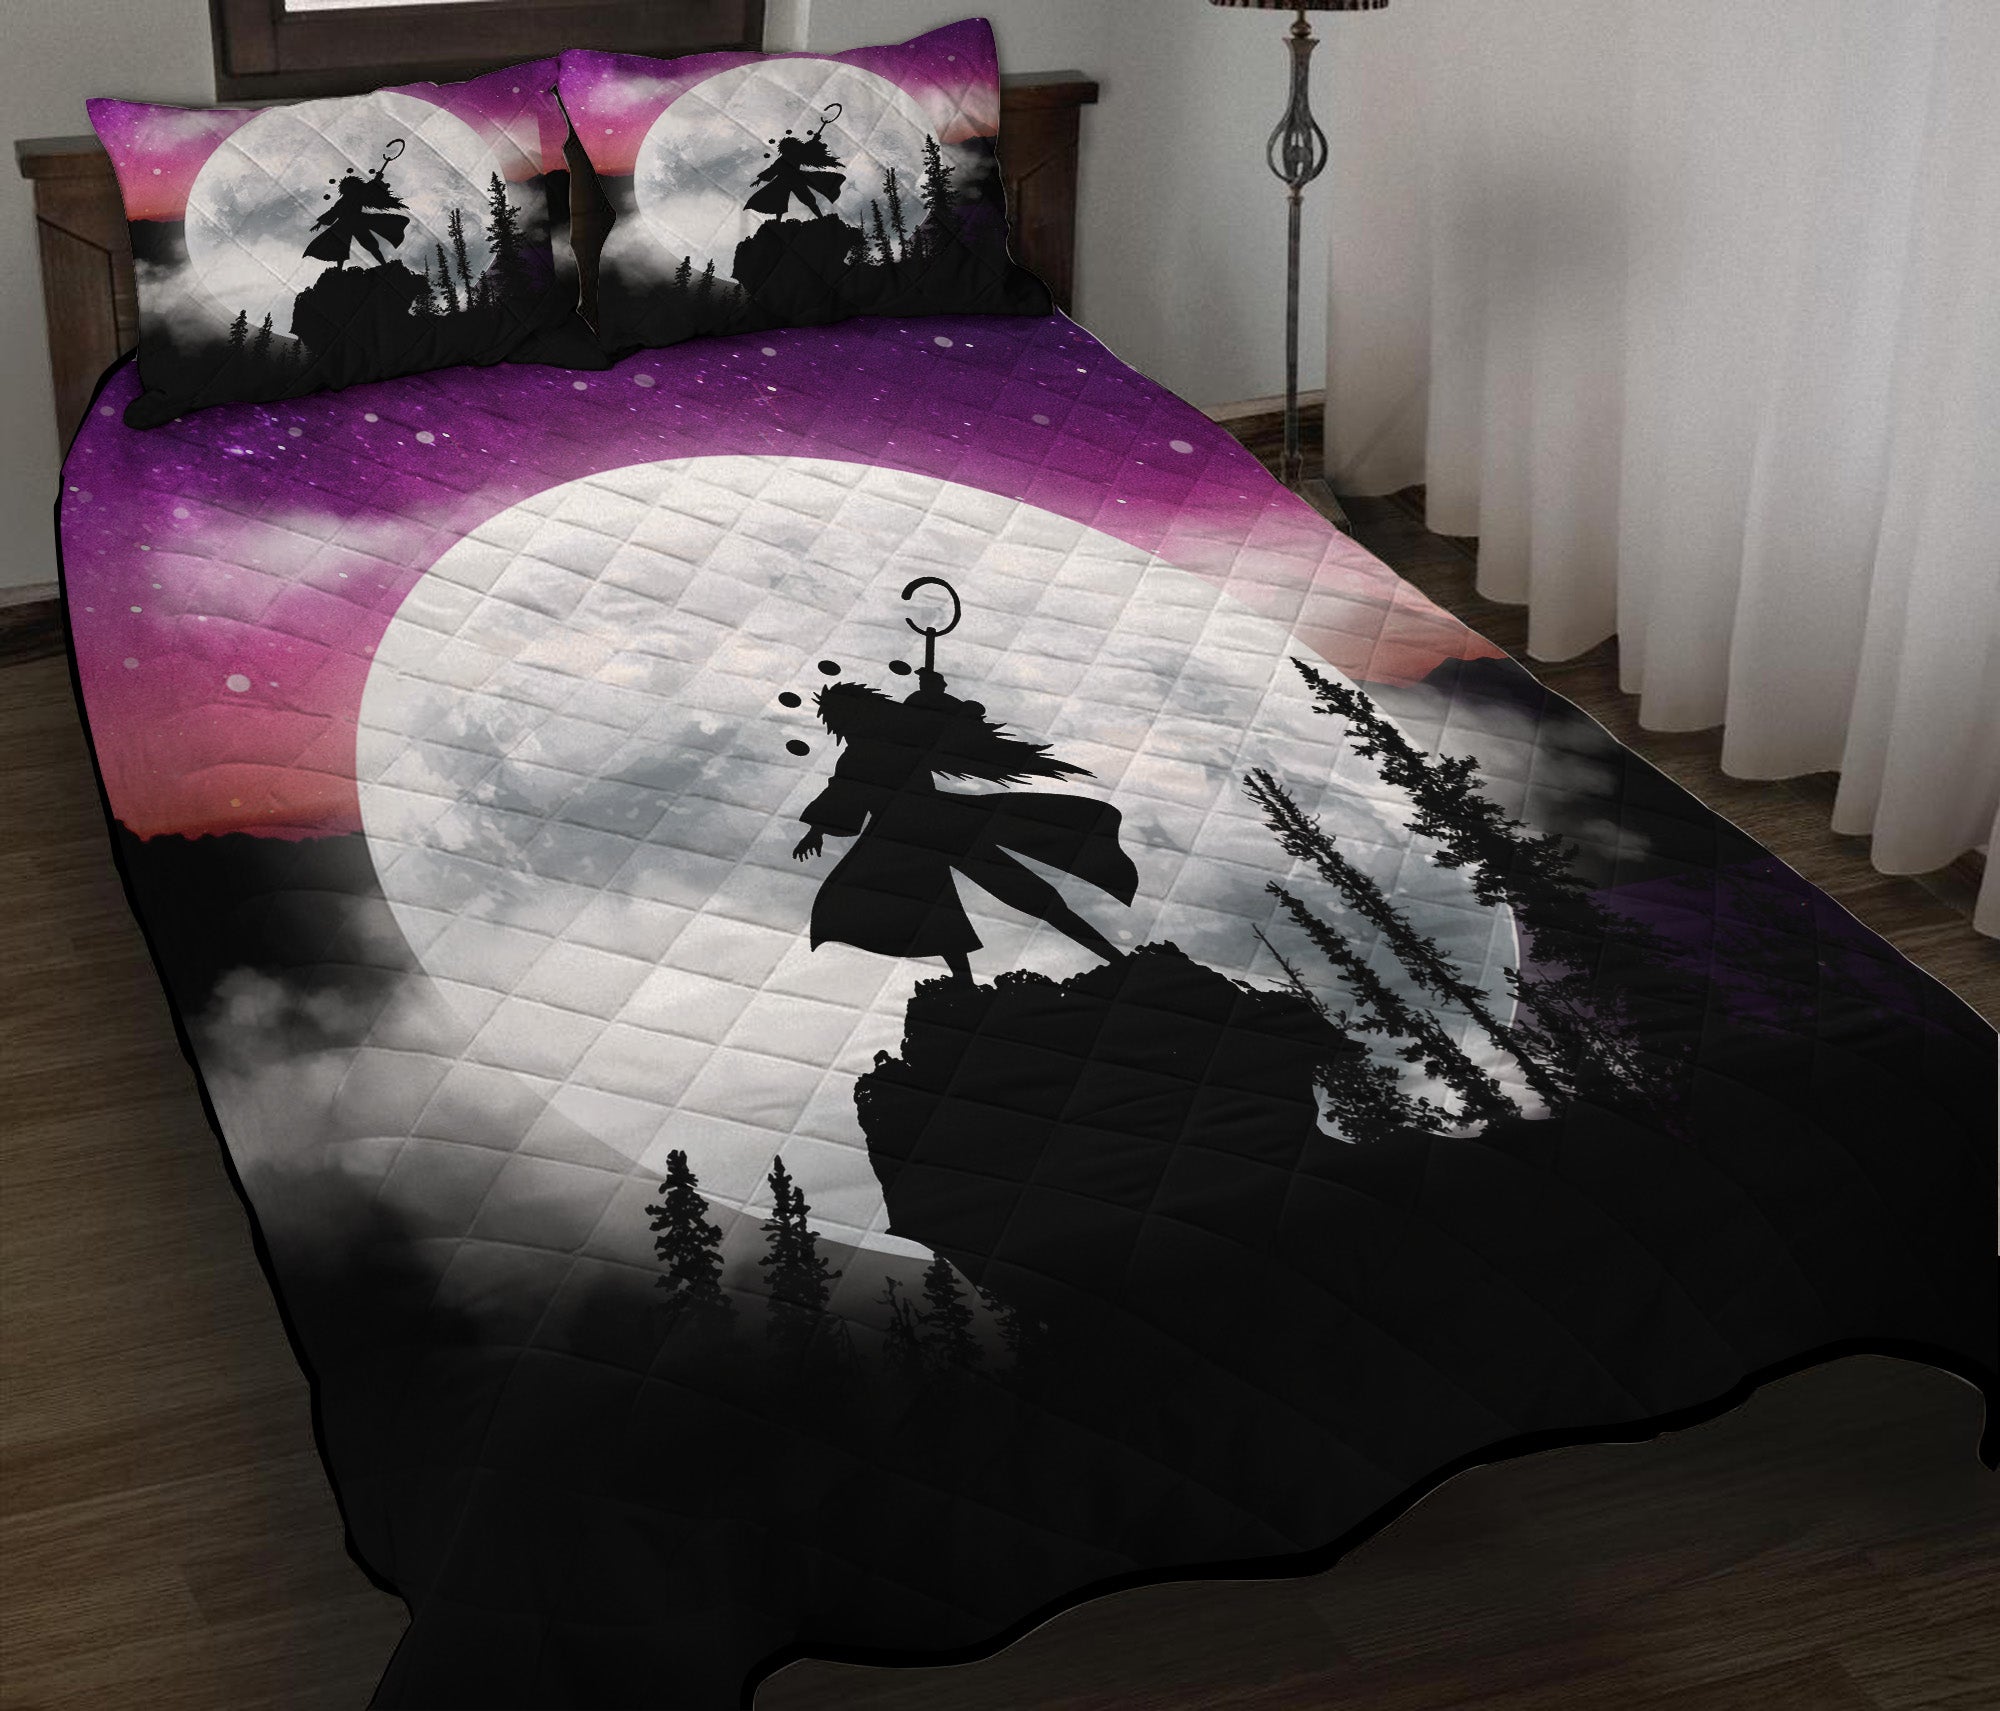 Uchiha Madara Naruto Anime Moon Night Galaxy Quilt Bed Sets